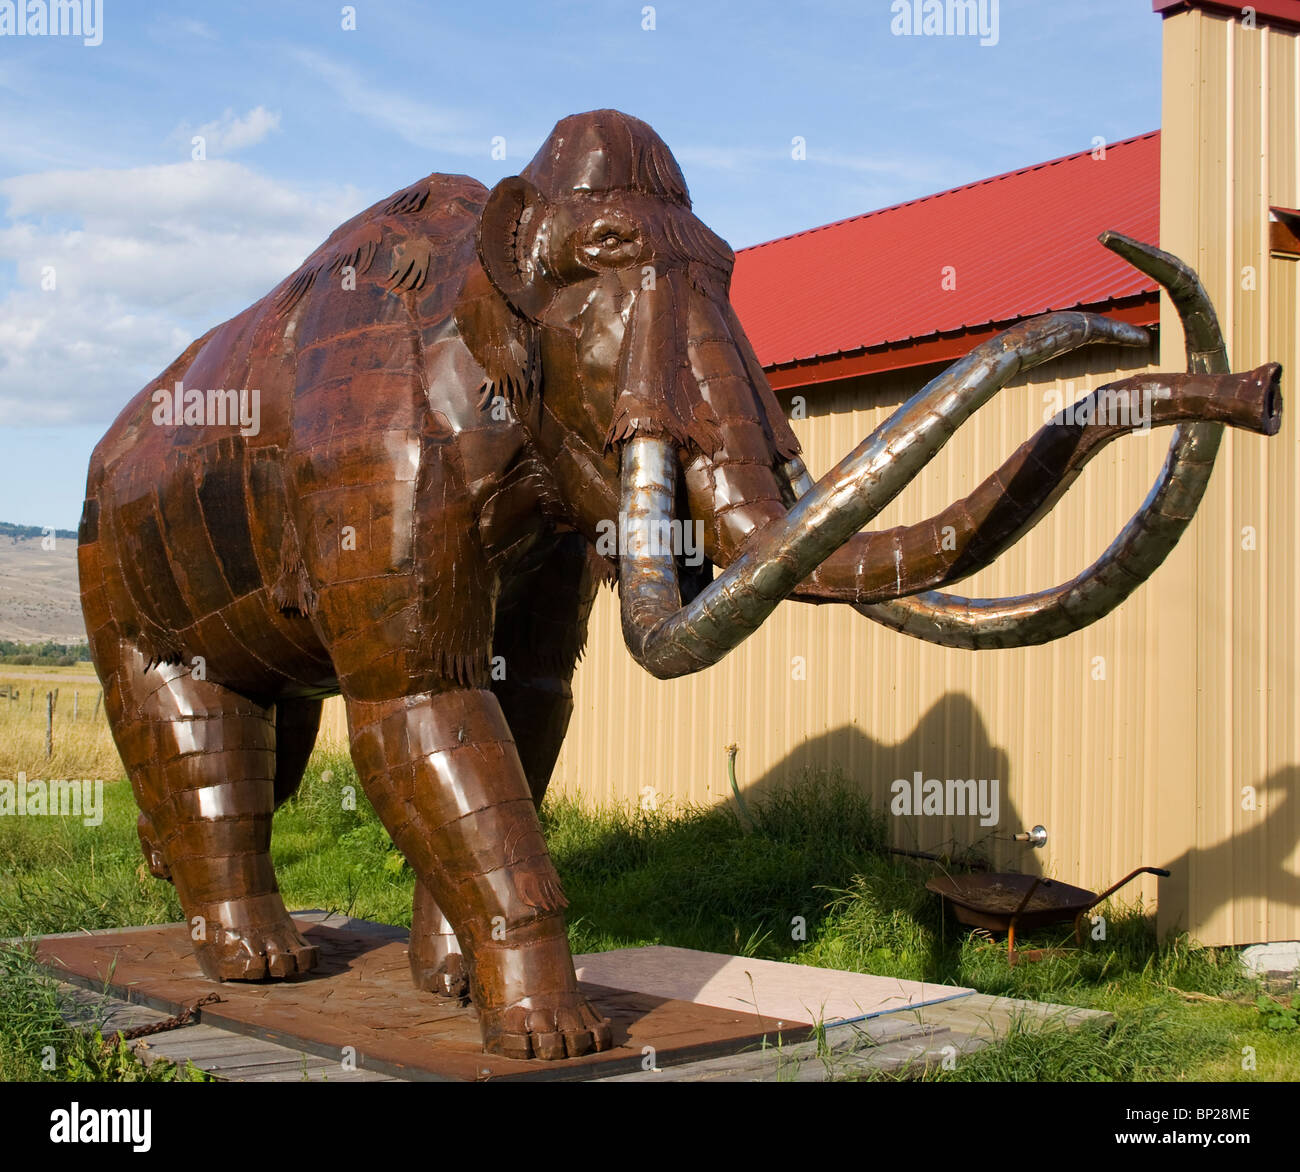 Esculturas metálicas de animales por el artista Bill Ohrmann en Drummond Montana Foto de stock